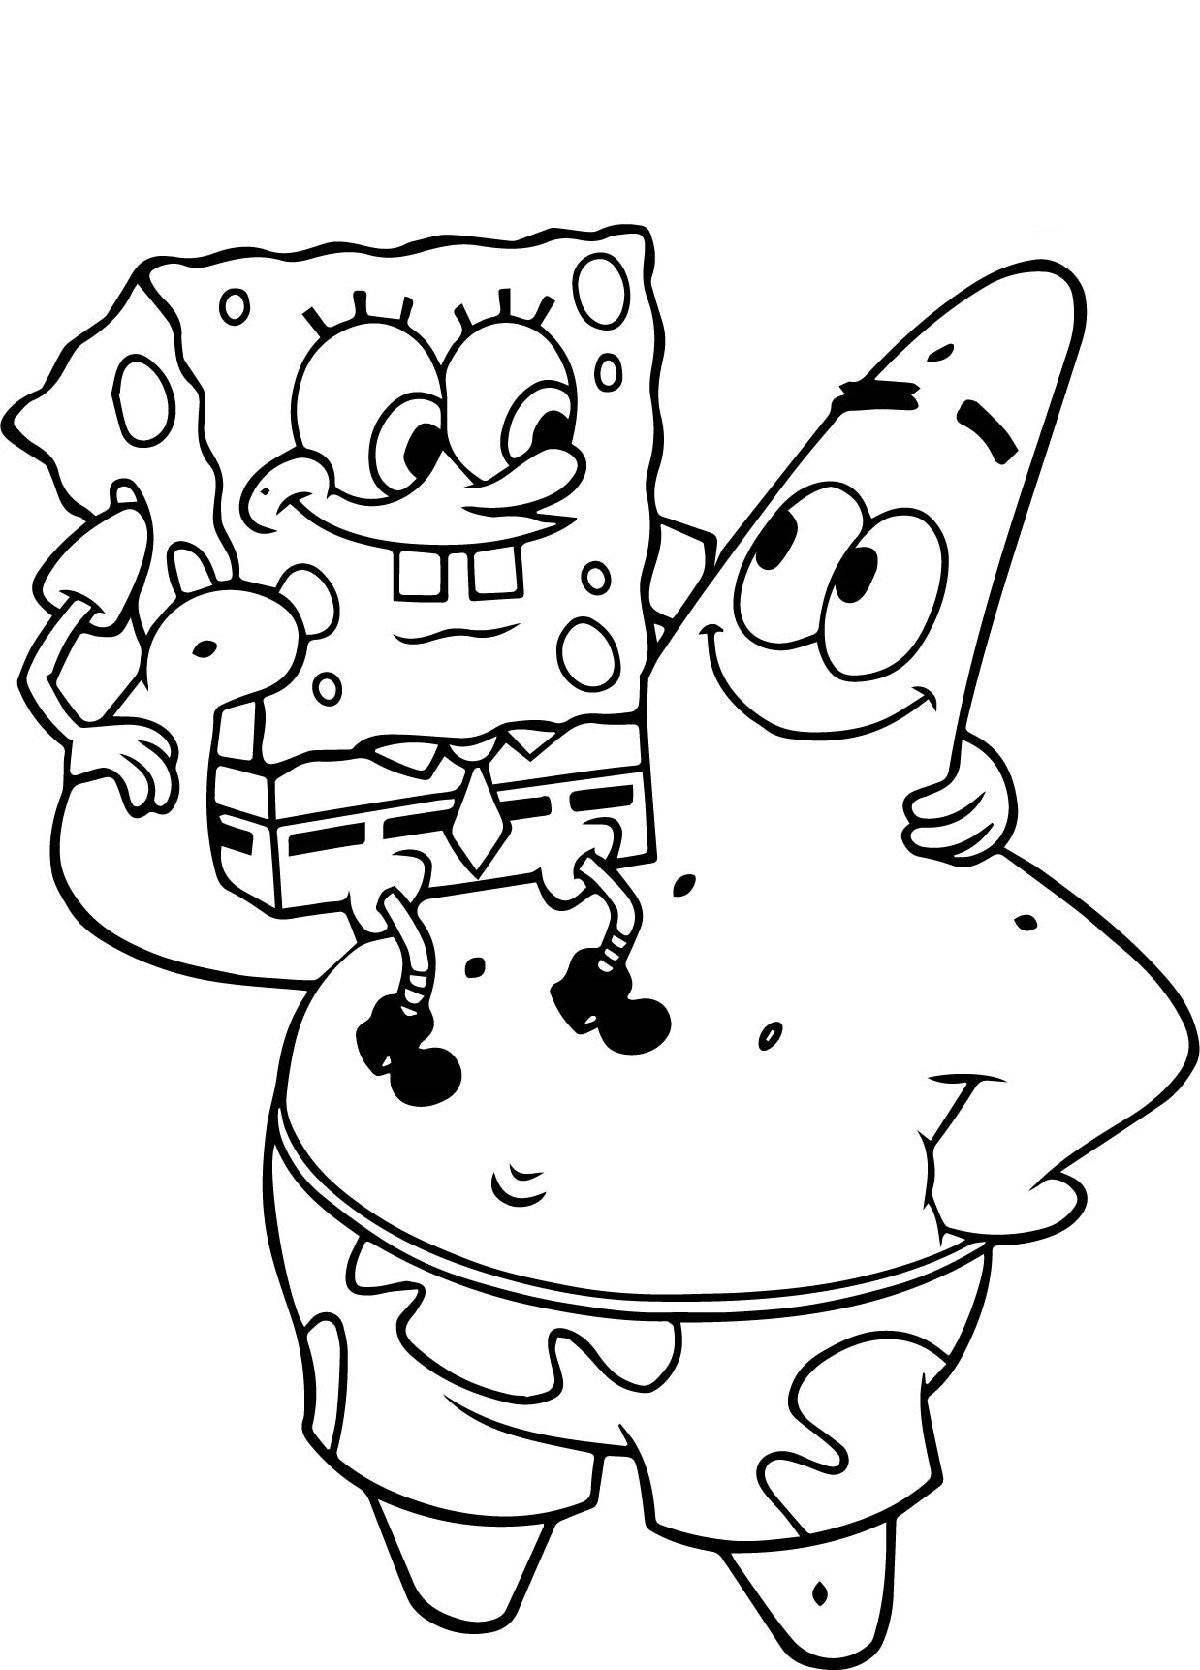 Cute coloring pages spongebob heroes